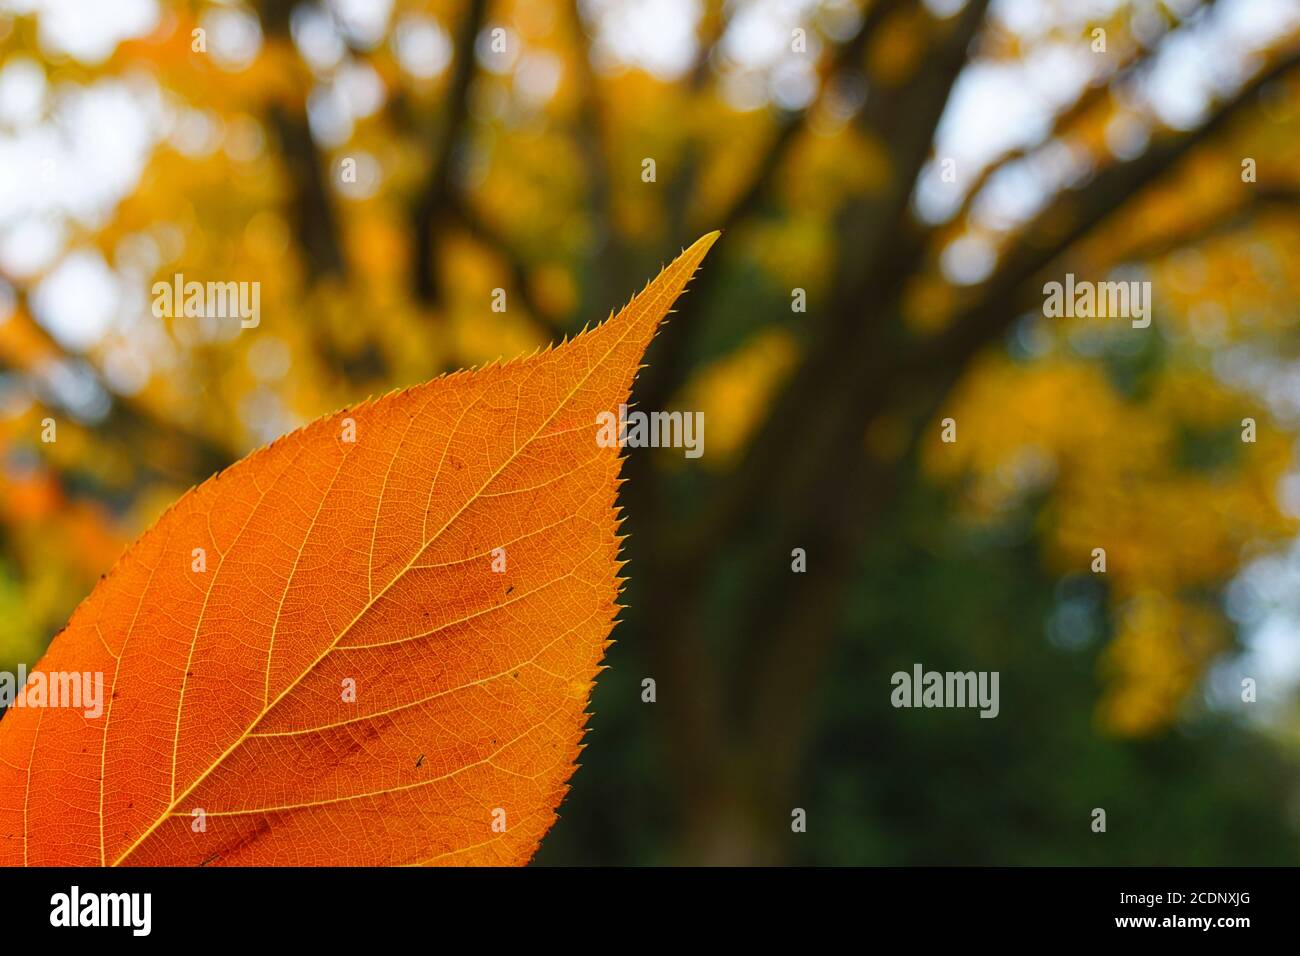 Primer plano con enfoque selectivo en una colorida hoja de otoño naranja. Árbol con hojas amarillas en el fondo borroso. Foto de stock